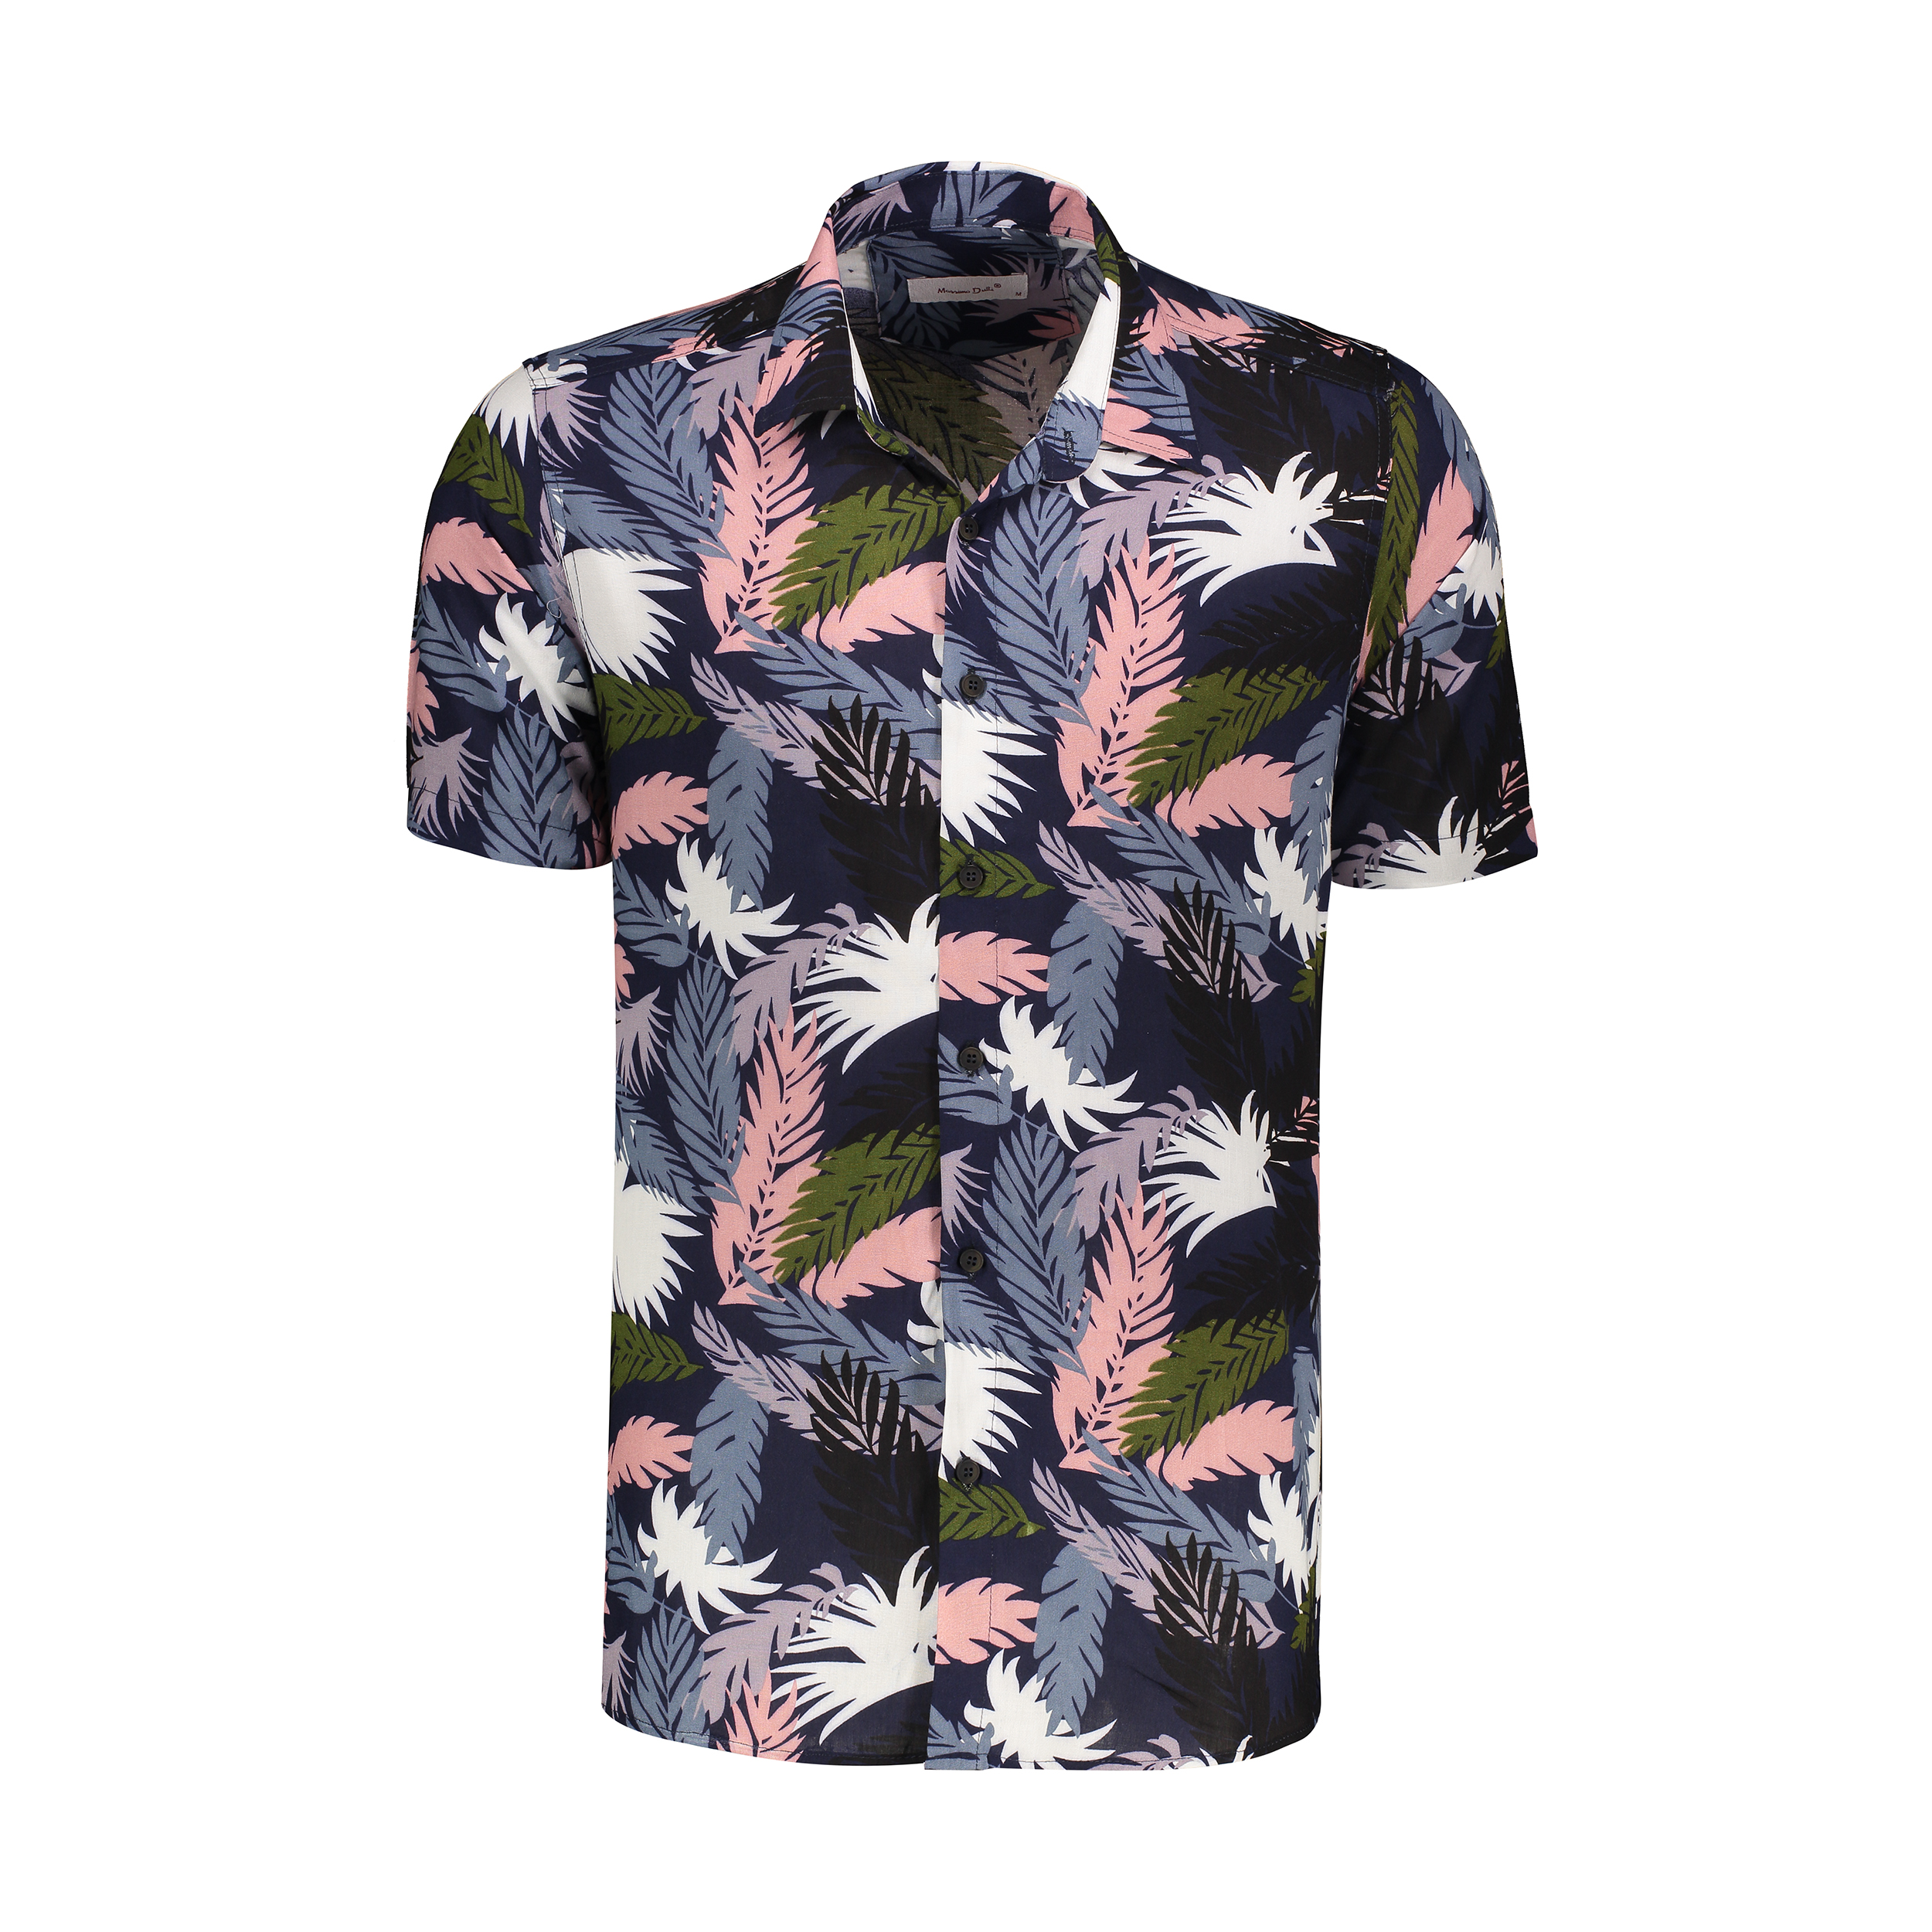 نکته خرید - قیمت روز  پیراهن آستین کوتاه مردانه مدل هاوایی پر کد H-par خرید